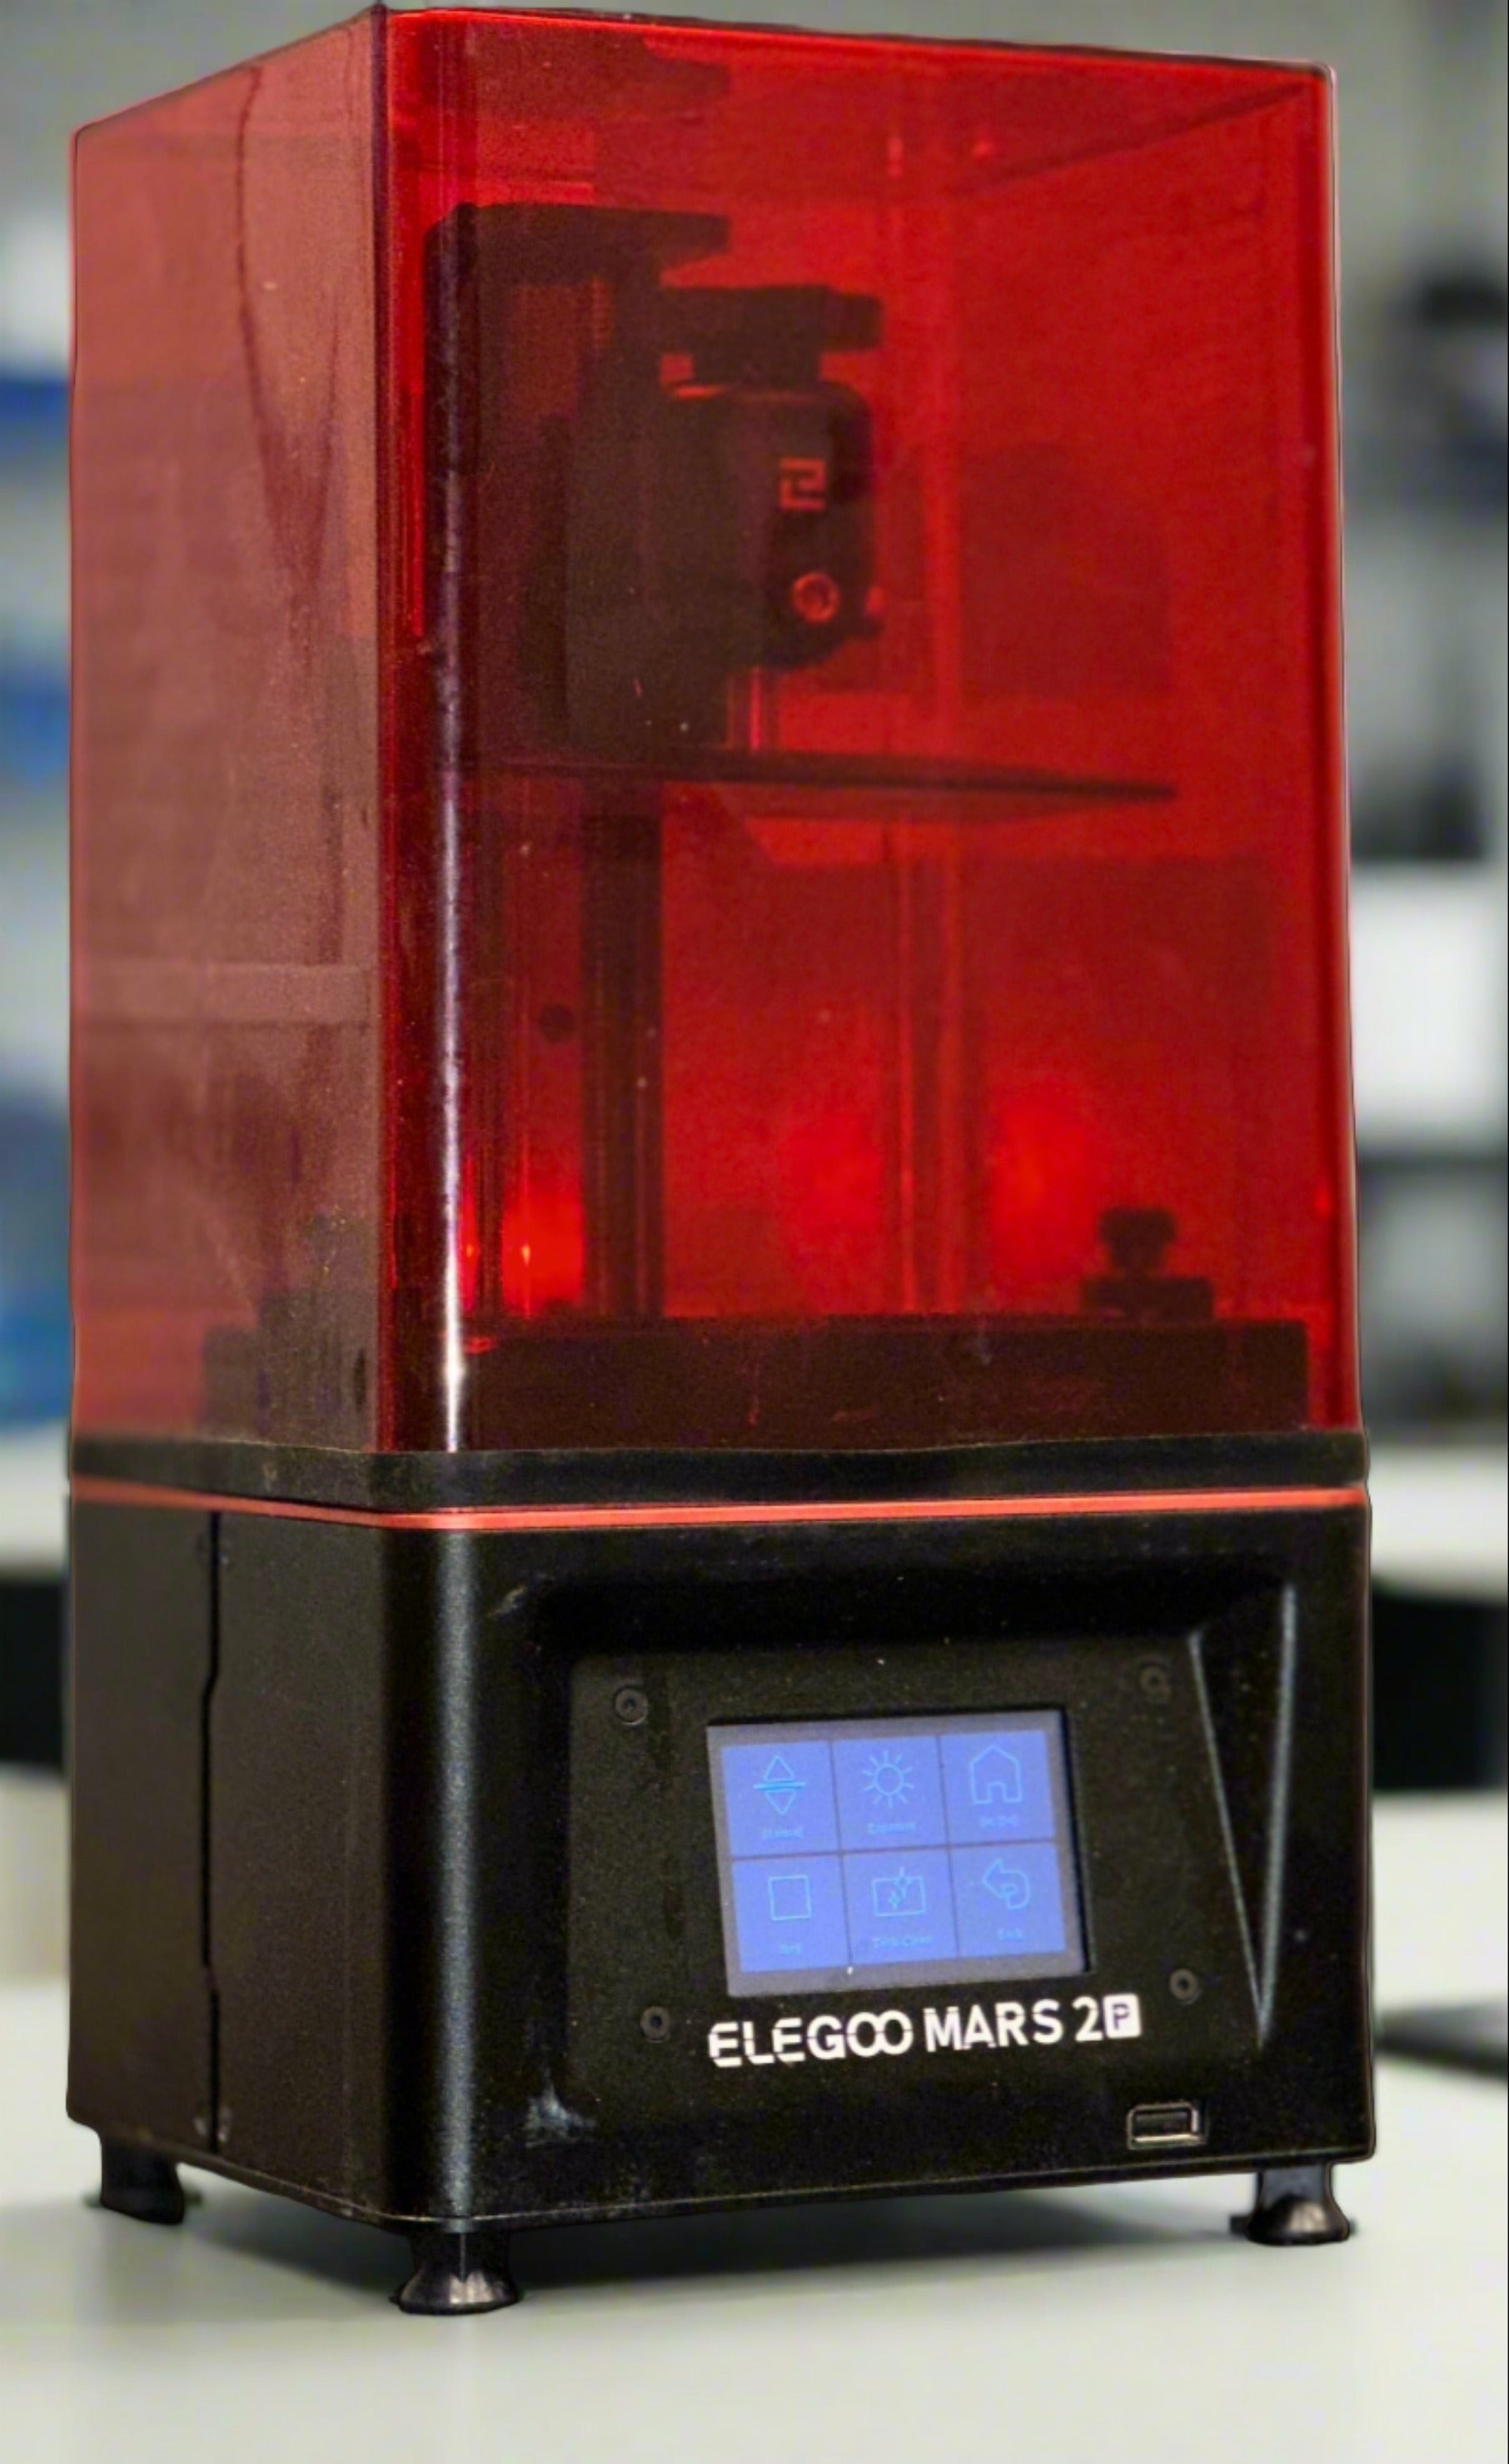 ELEGOO Mars review - affordable UV resin 3D printer